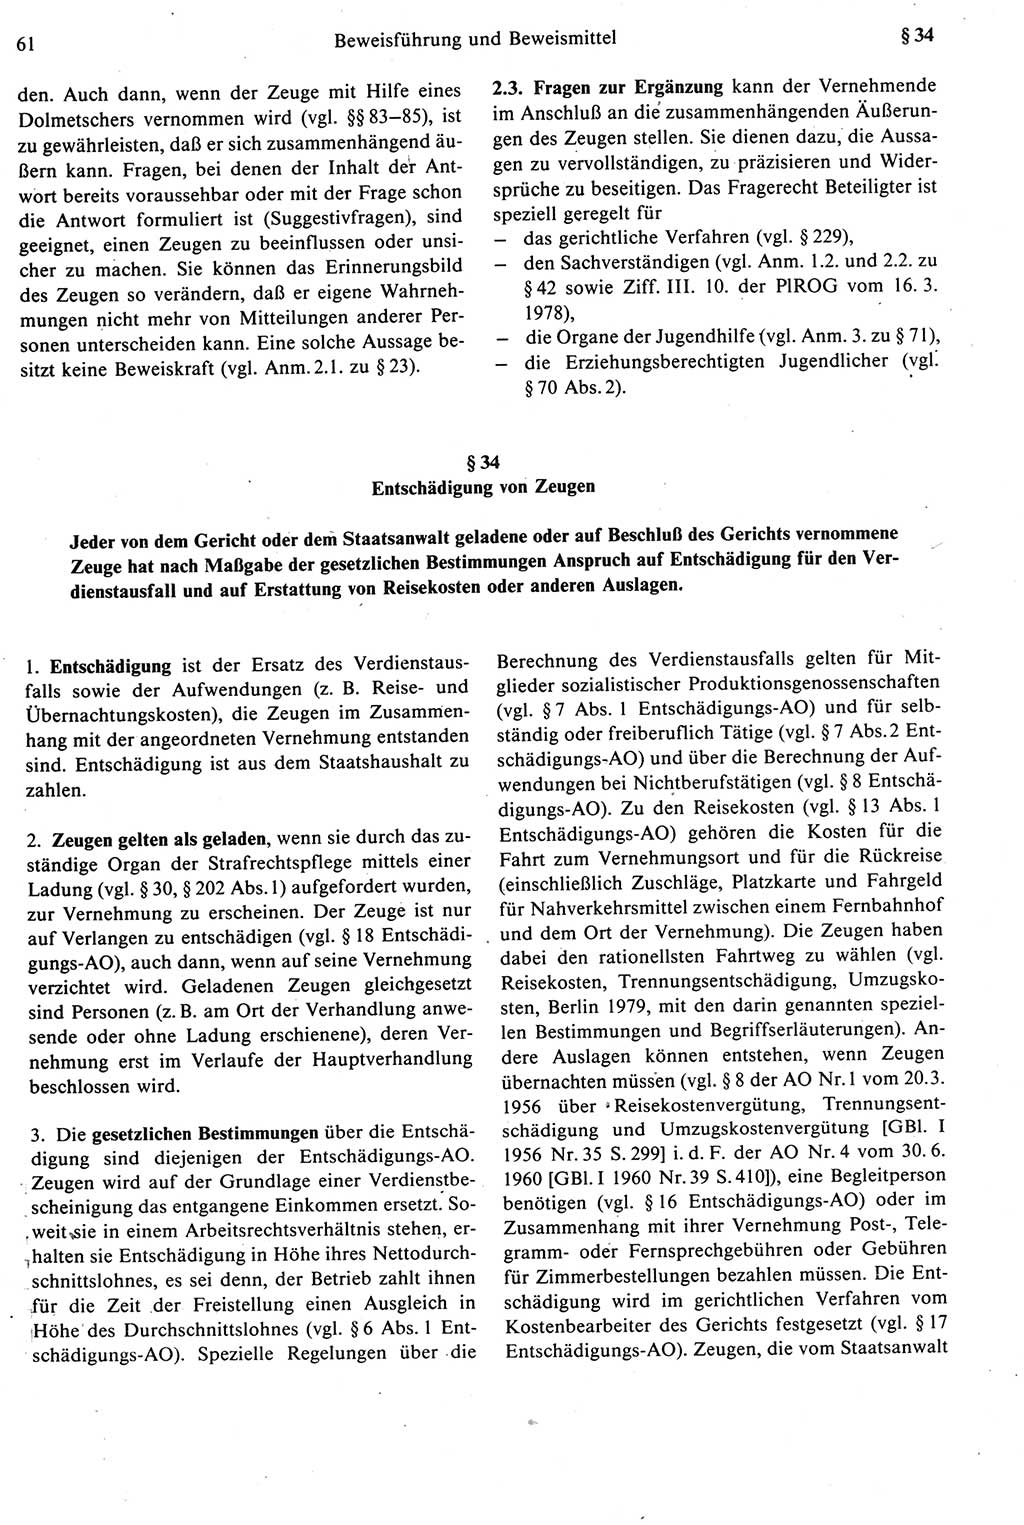 Strafprozeßrecht der DDR [Deutsche Demokratische Republik], Kommentar zur Strafprozeßordnung (StPO) 1987, Seite 61 (Strafprozeßr. DDR Komm. StPO 1987, S. 61)